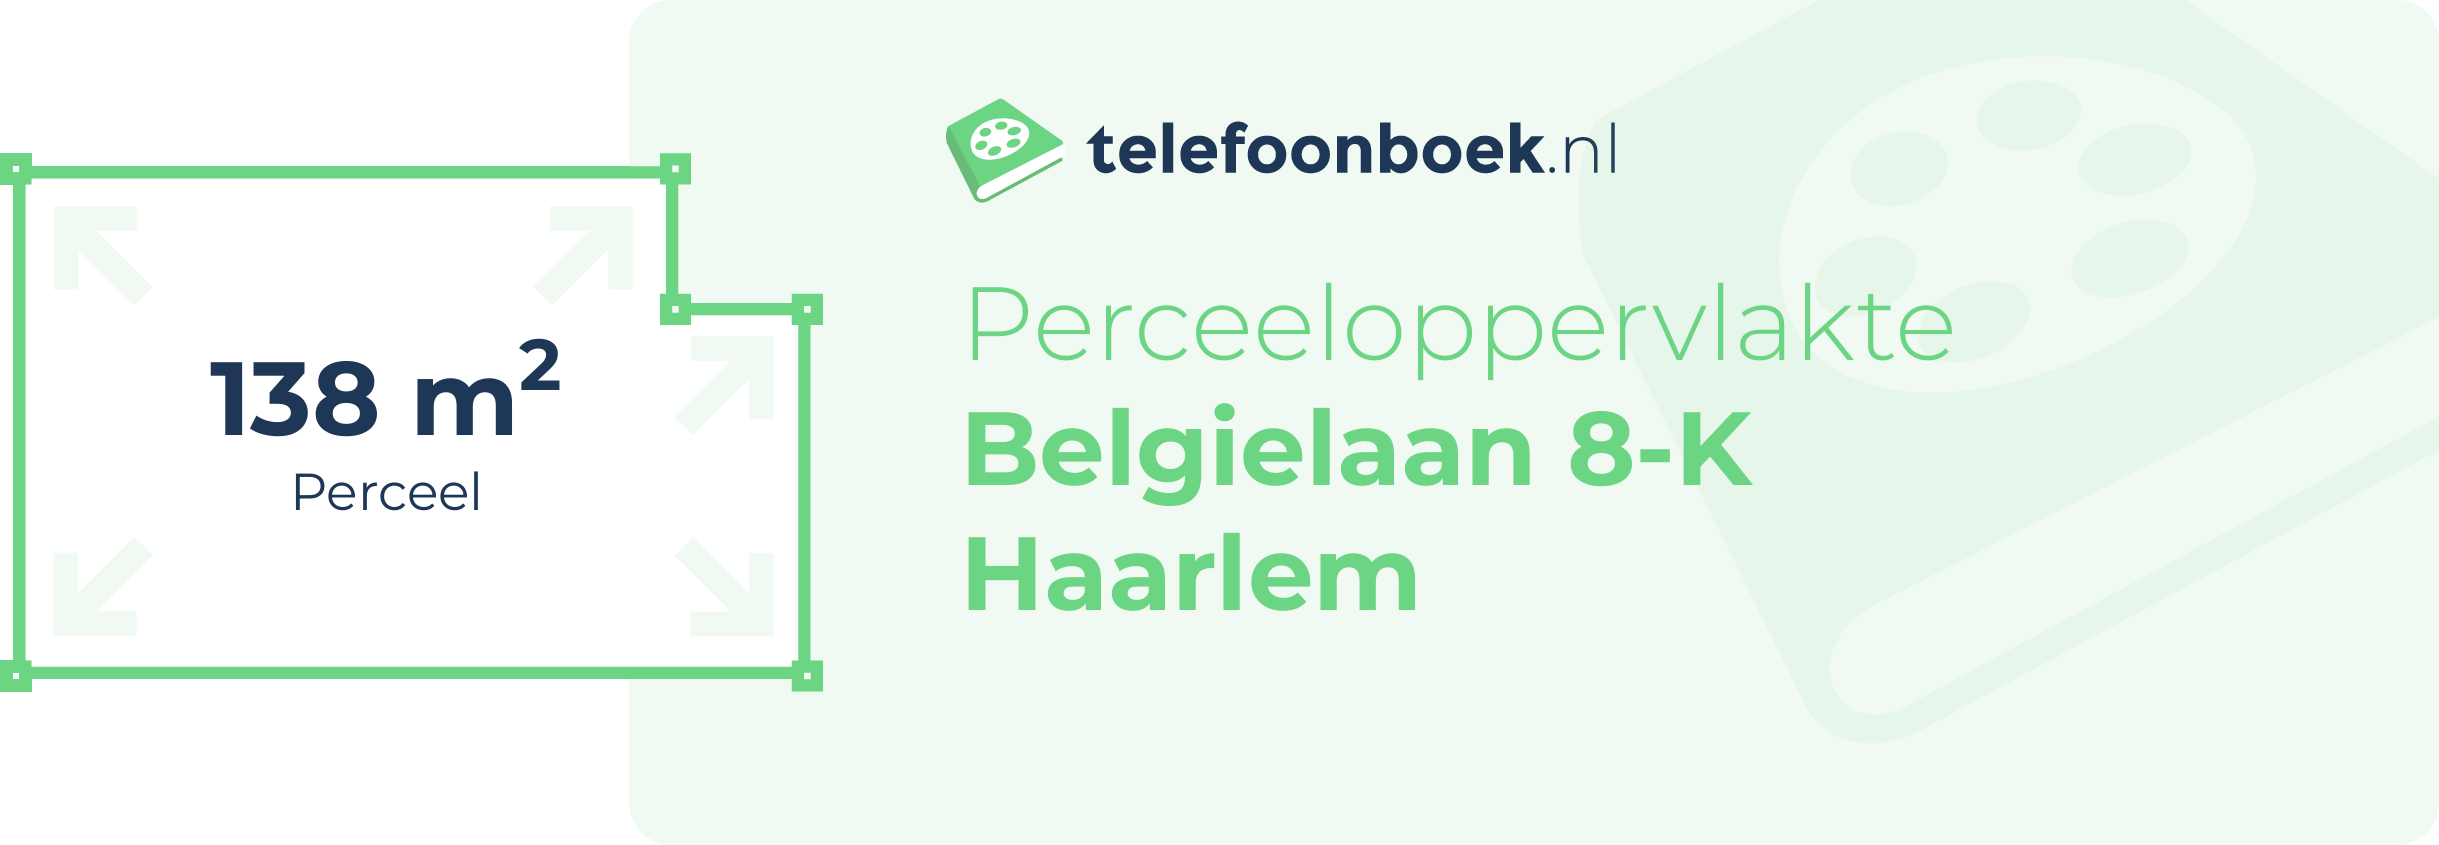 Perceeloppervlakte Belgielaan 8-K Haarlem